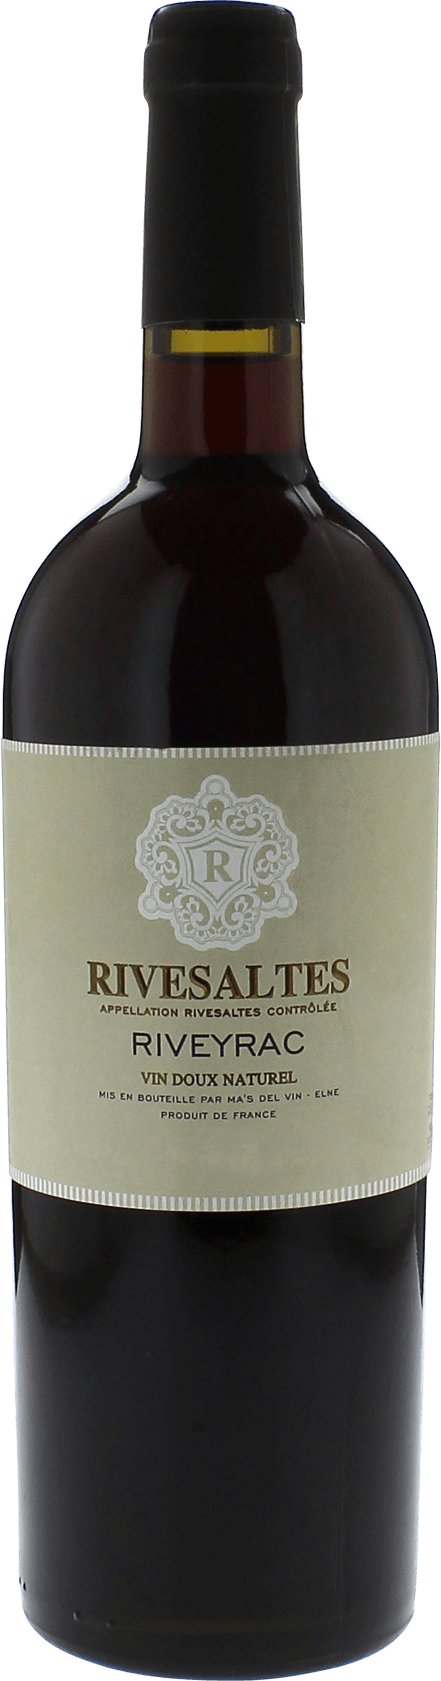 Riveyrac 1969 Vin doux naturel Rivesaltes, Vin doux naturel